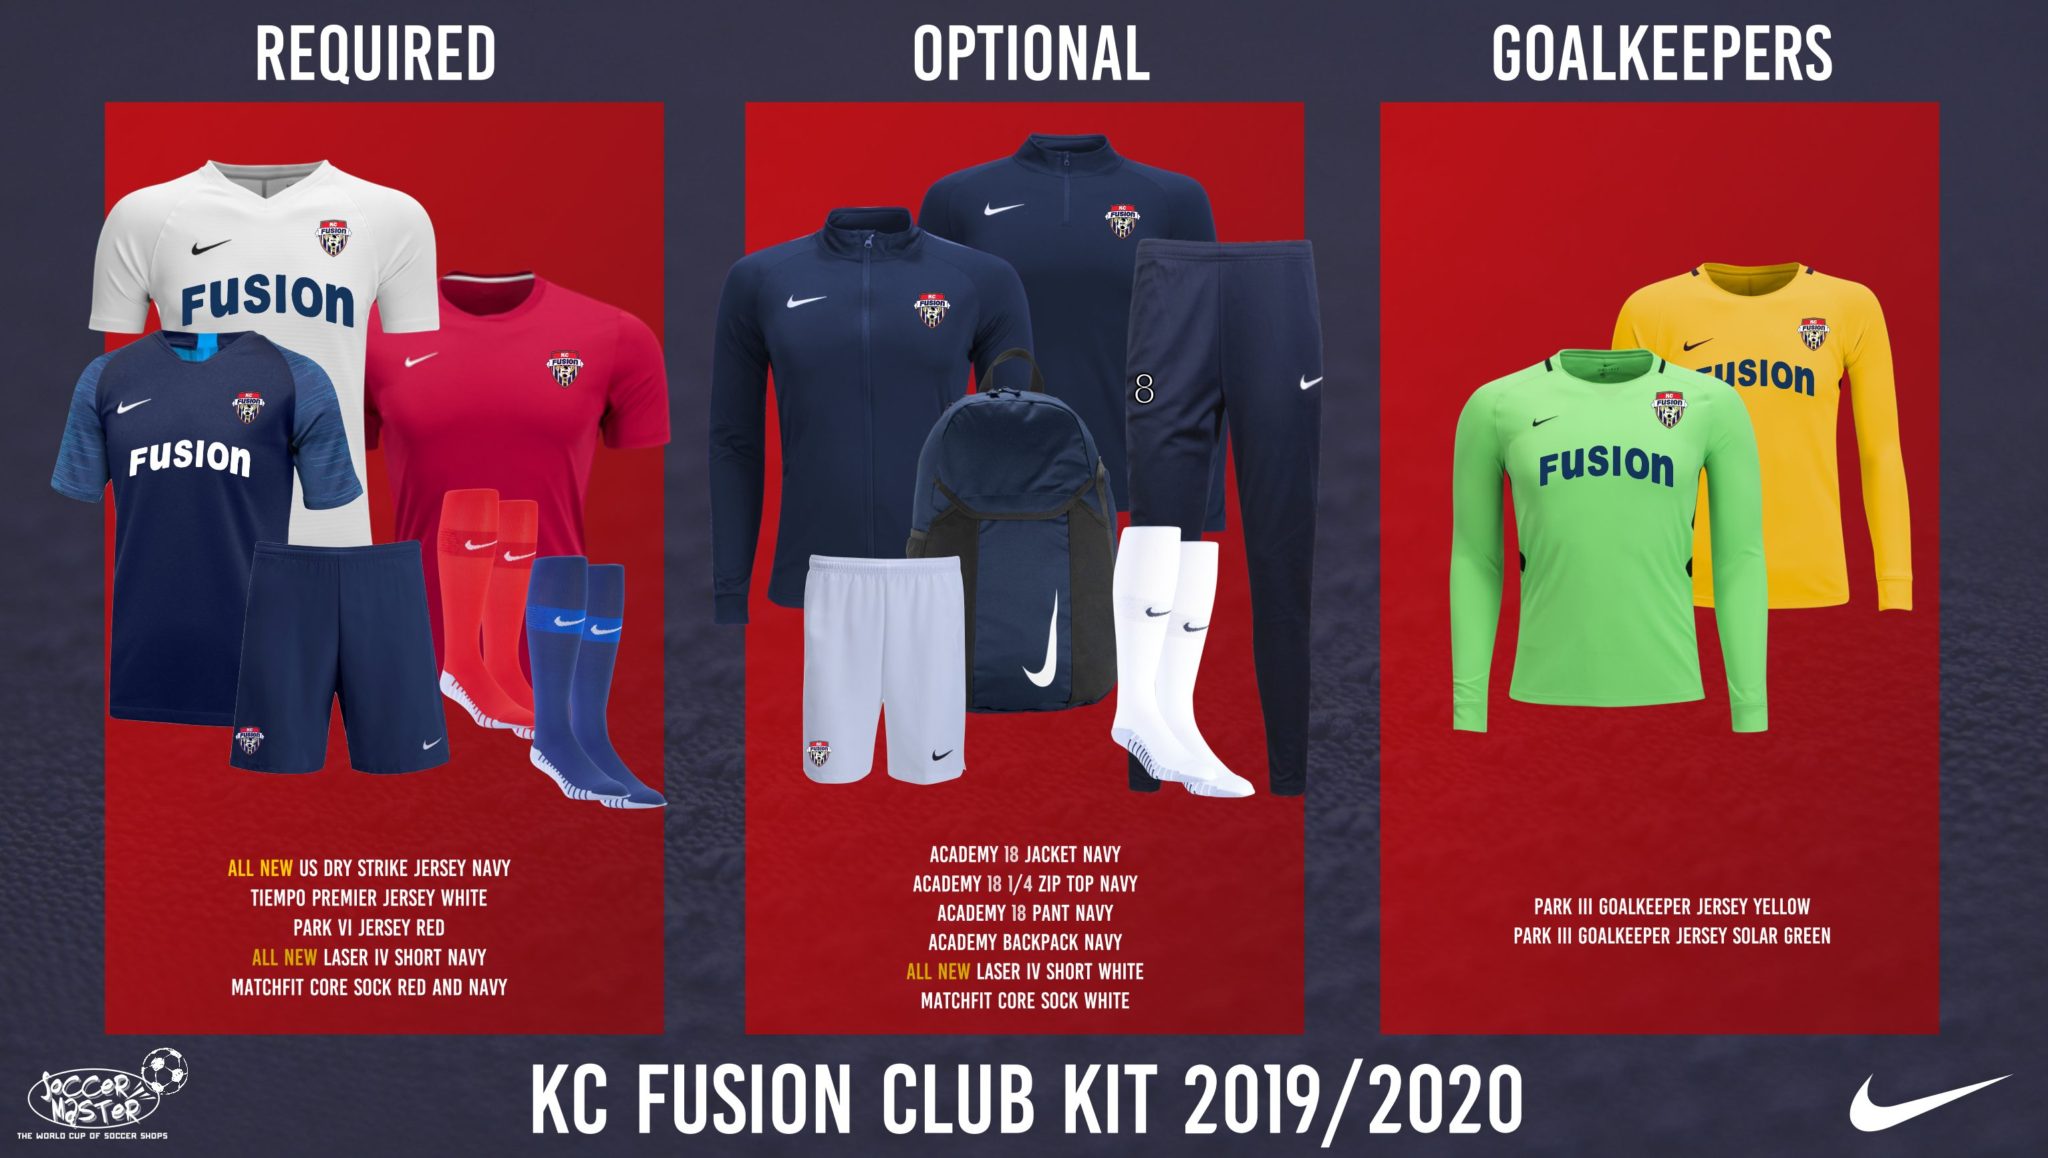 KC Fusion Uniforms - Get the Latest 